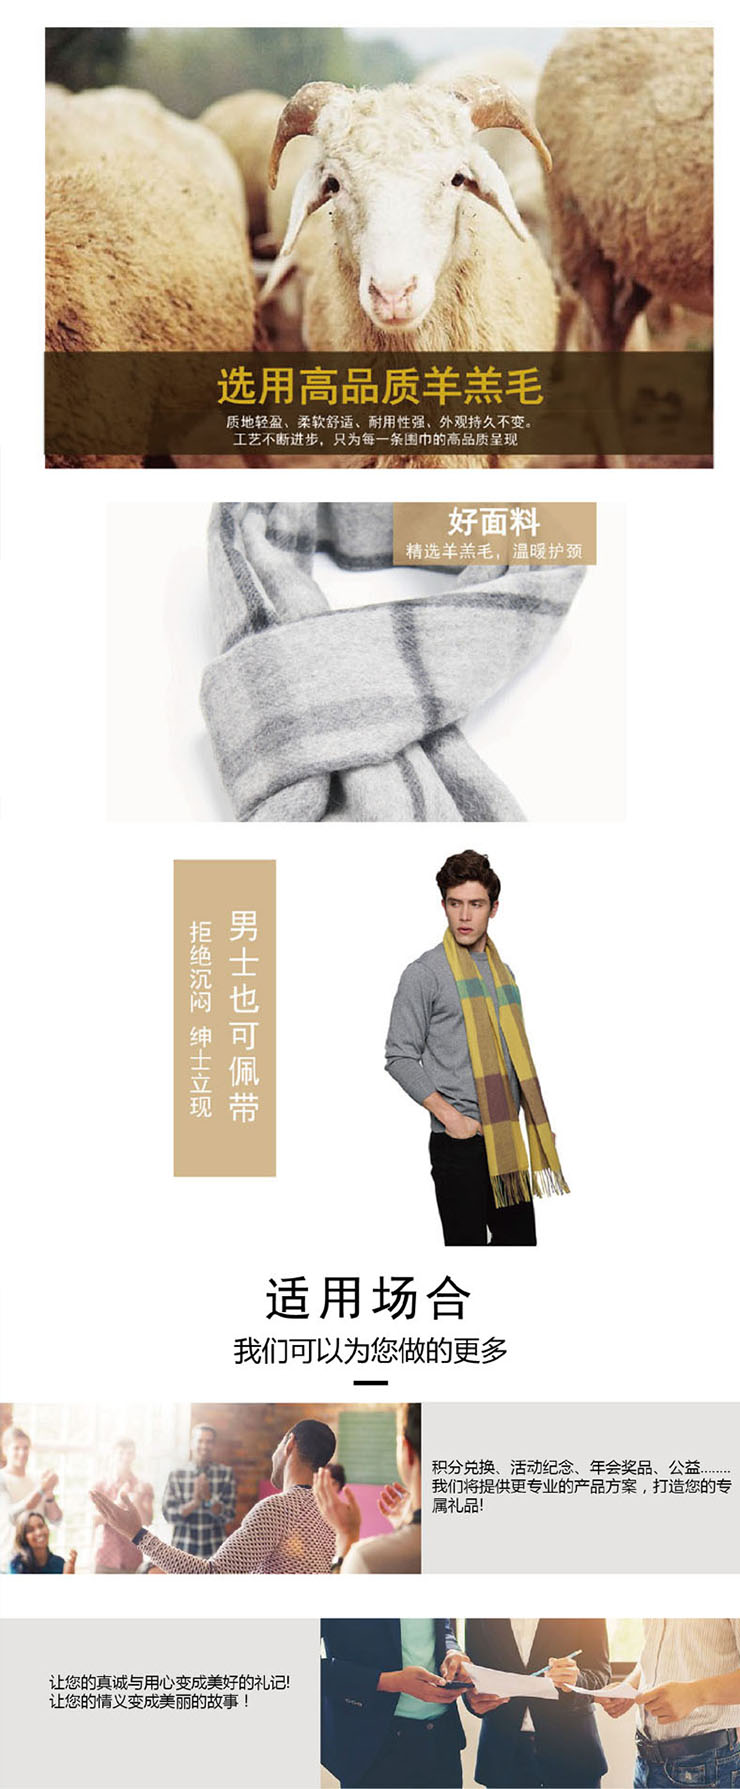 羊绒围巾,羊毛围巾,羊毛围巾品牌-艾丝雅兰